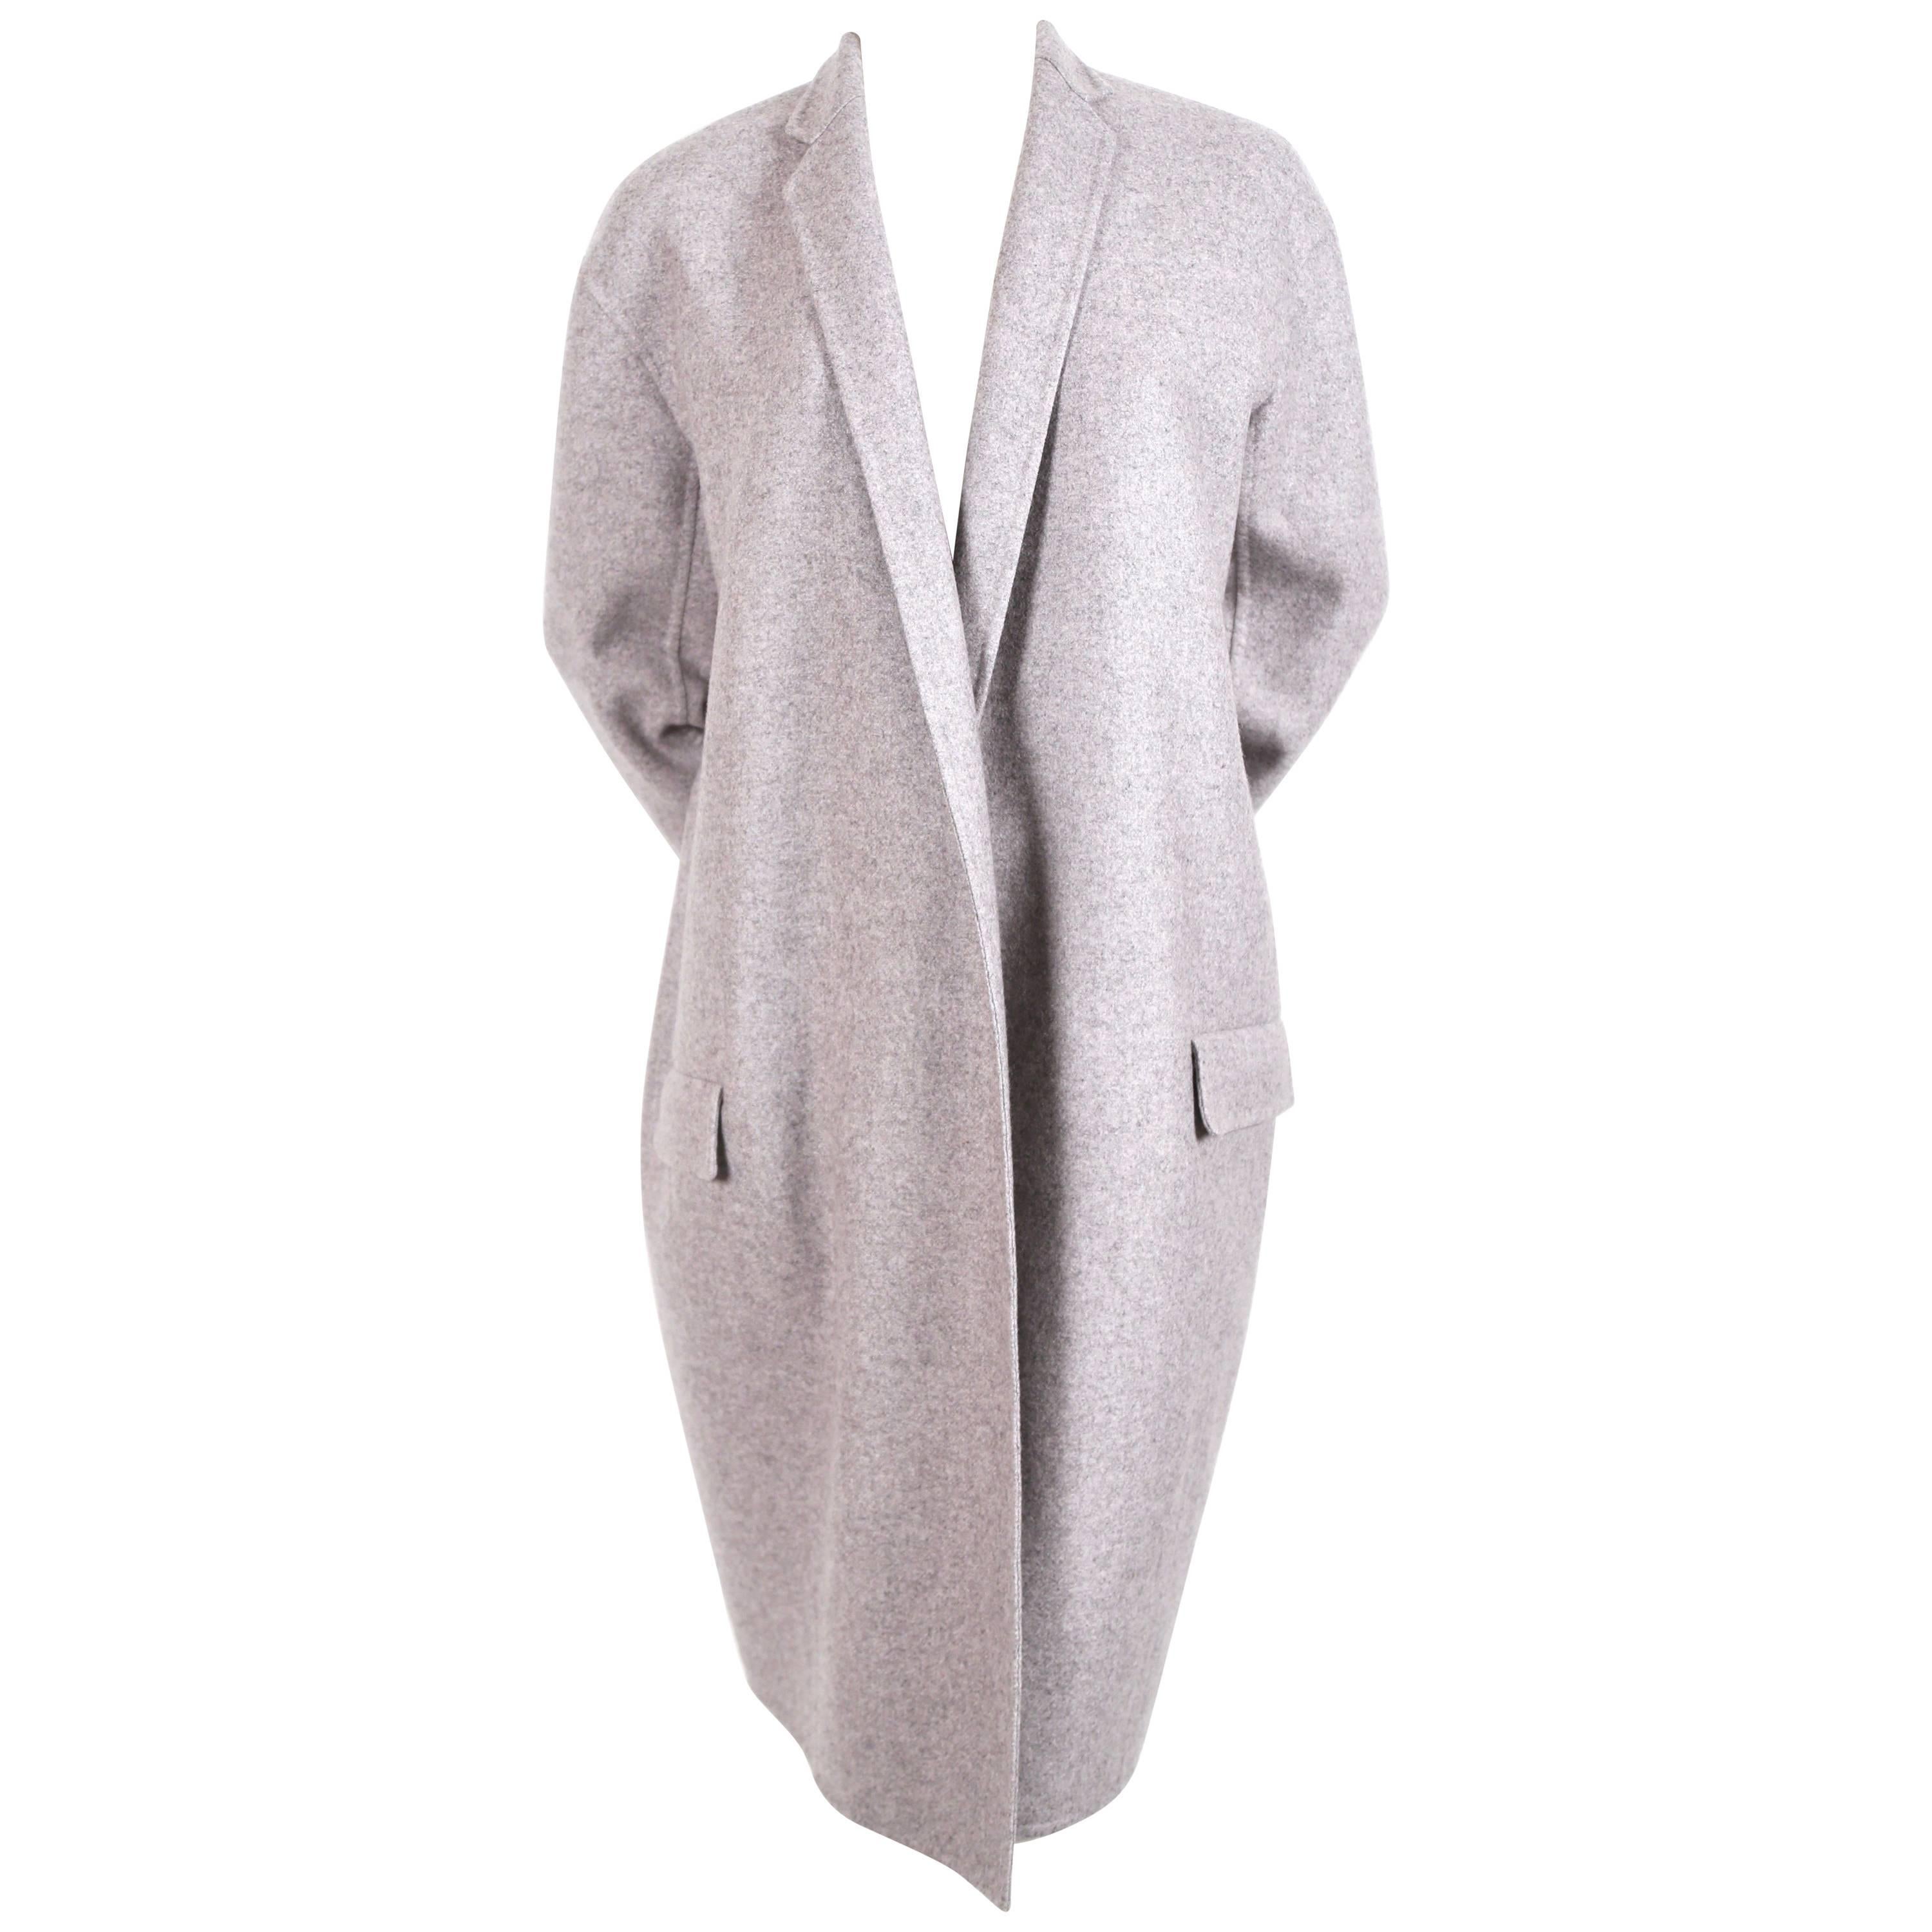 Celine By Phoebe Philo heathered grey "egg shape" cashmere coat